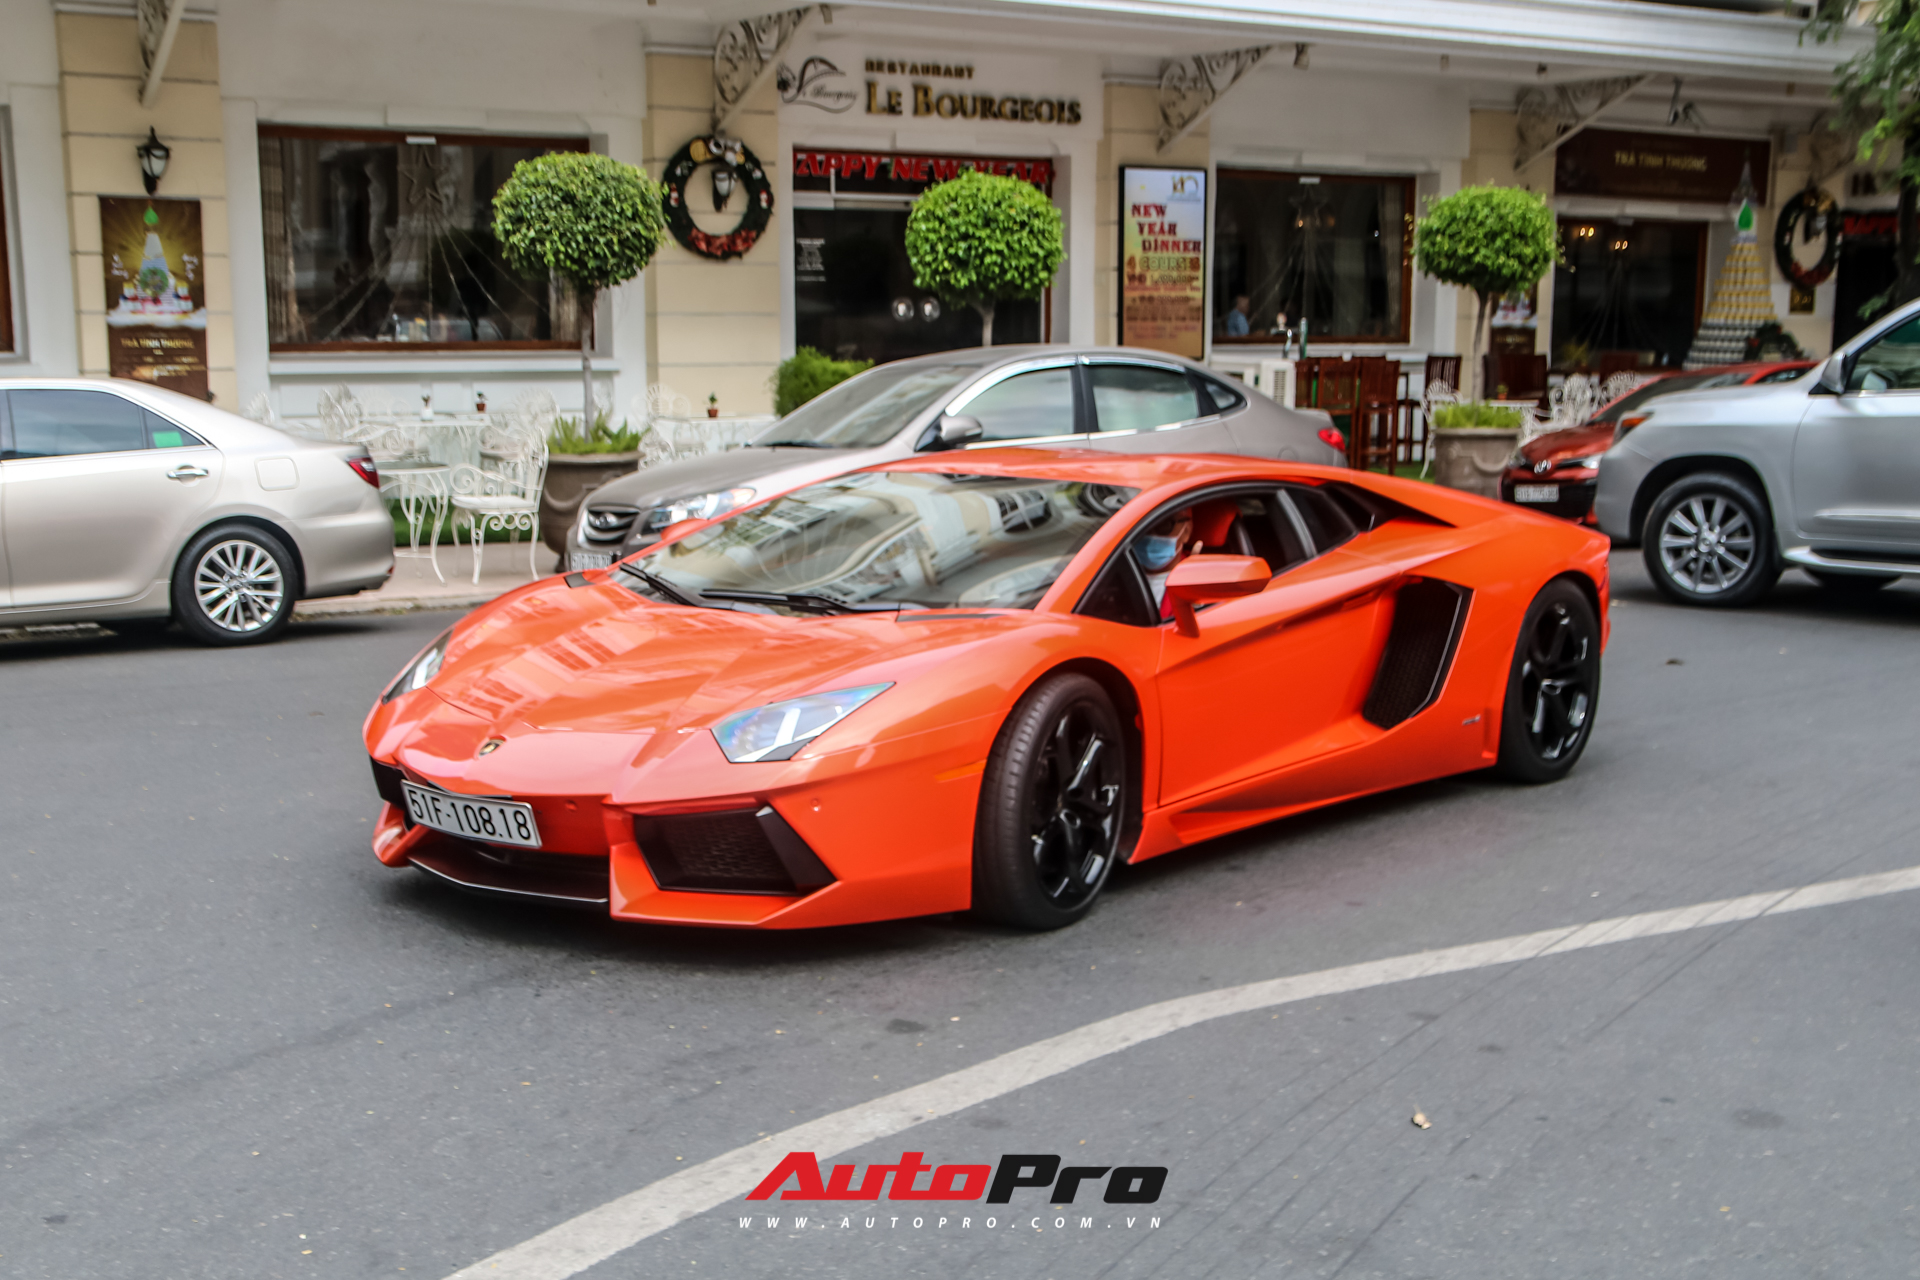 Doanh nhân Cao Hoài Trung cầm lái Lamborghini Aventador dạo phố ngày đầu năm mới - Ảnh 5.